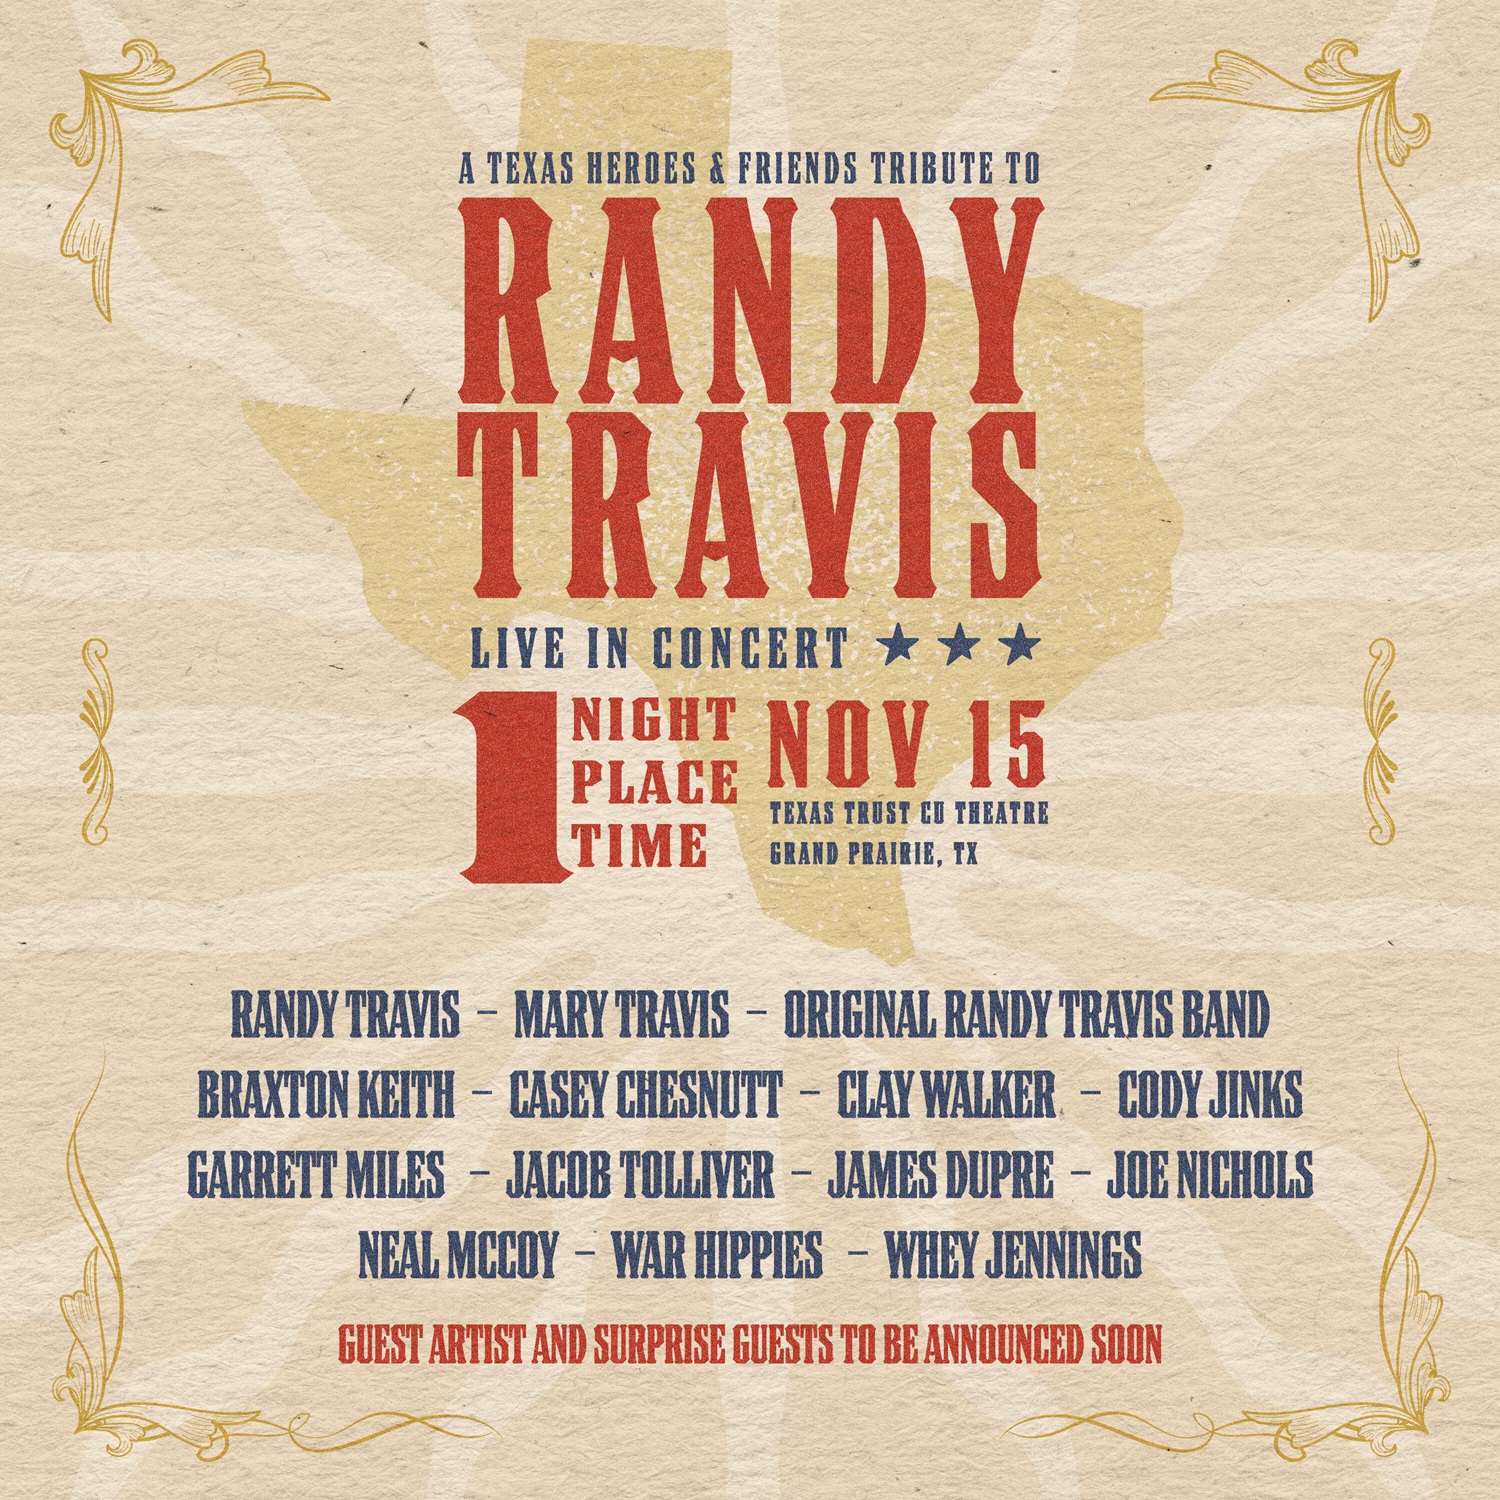 A Texas Heroes & Friends Tribute to Randy Travis - Grand Prairie, TX